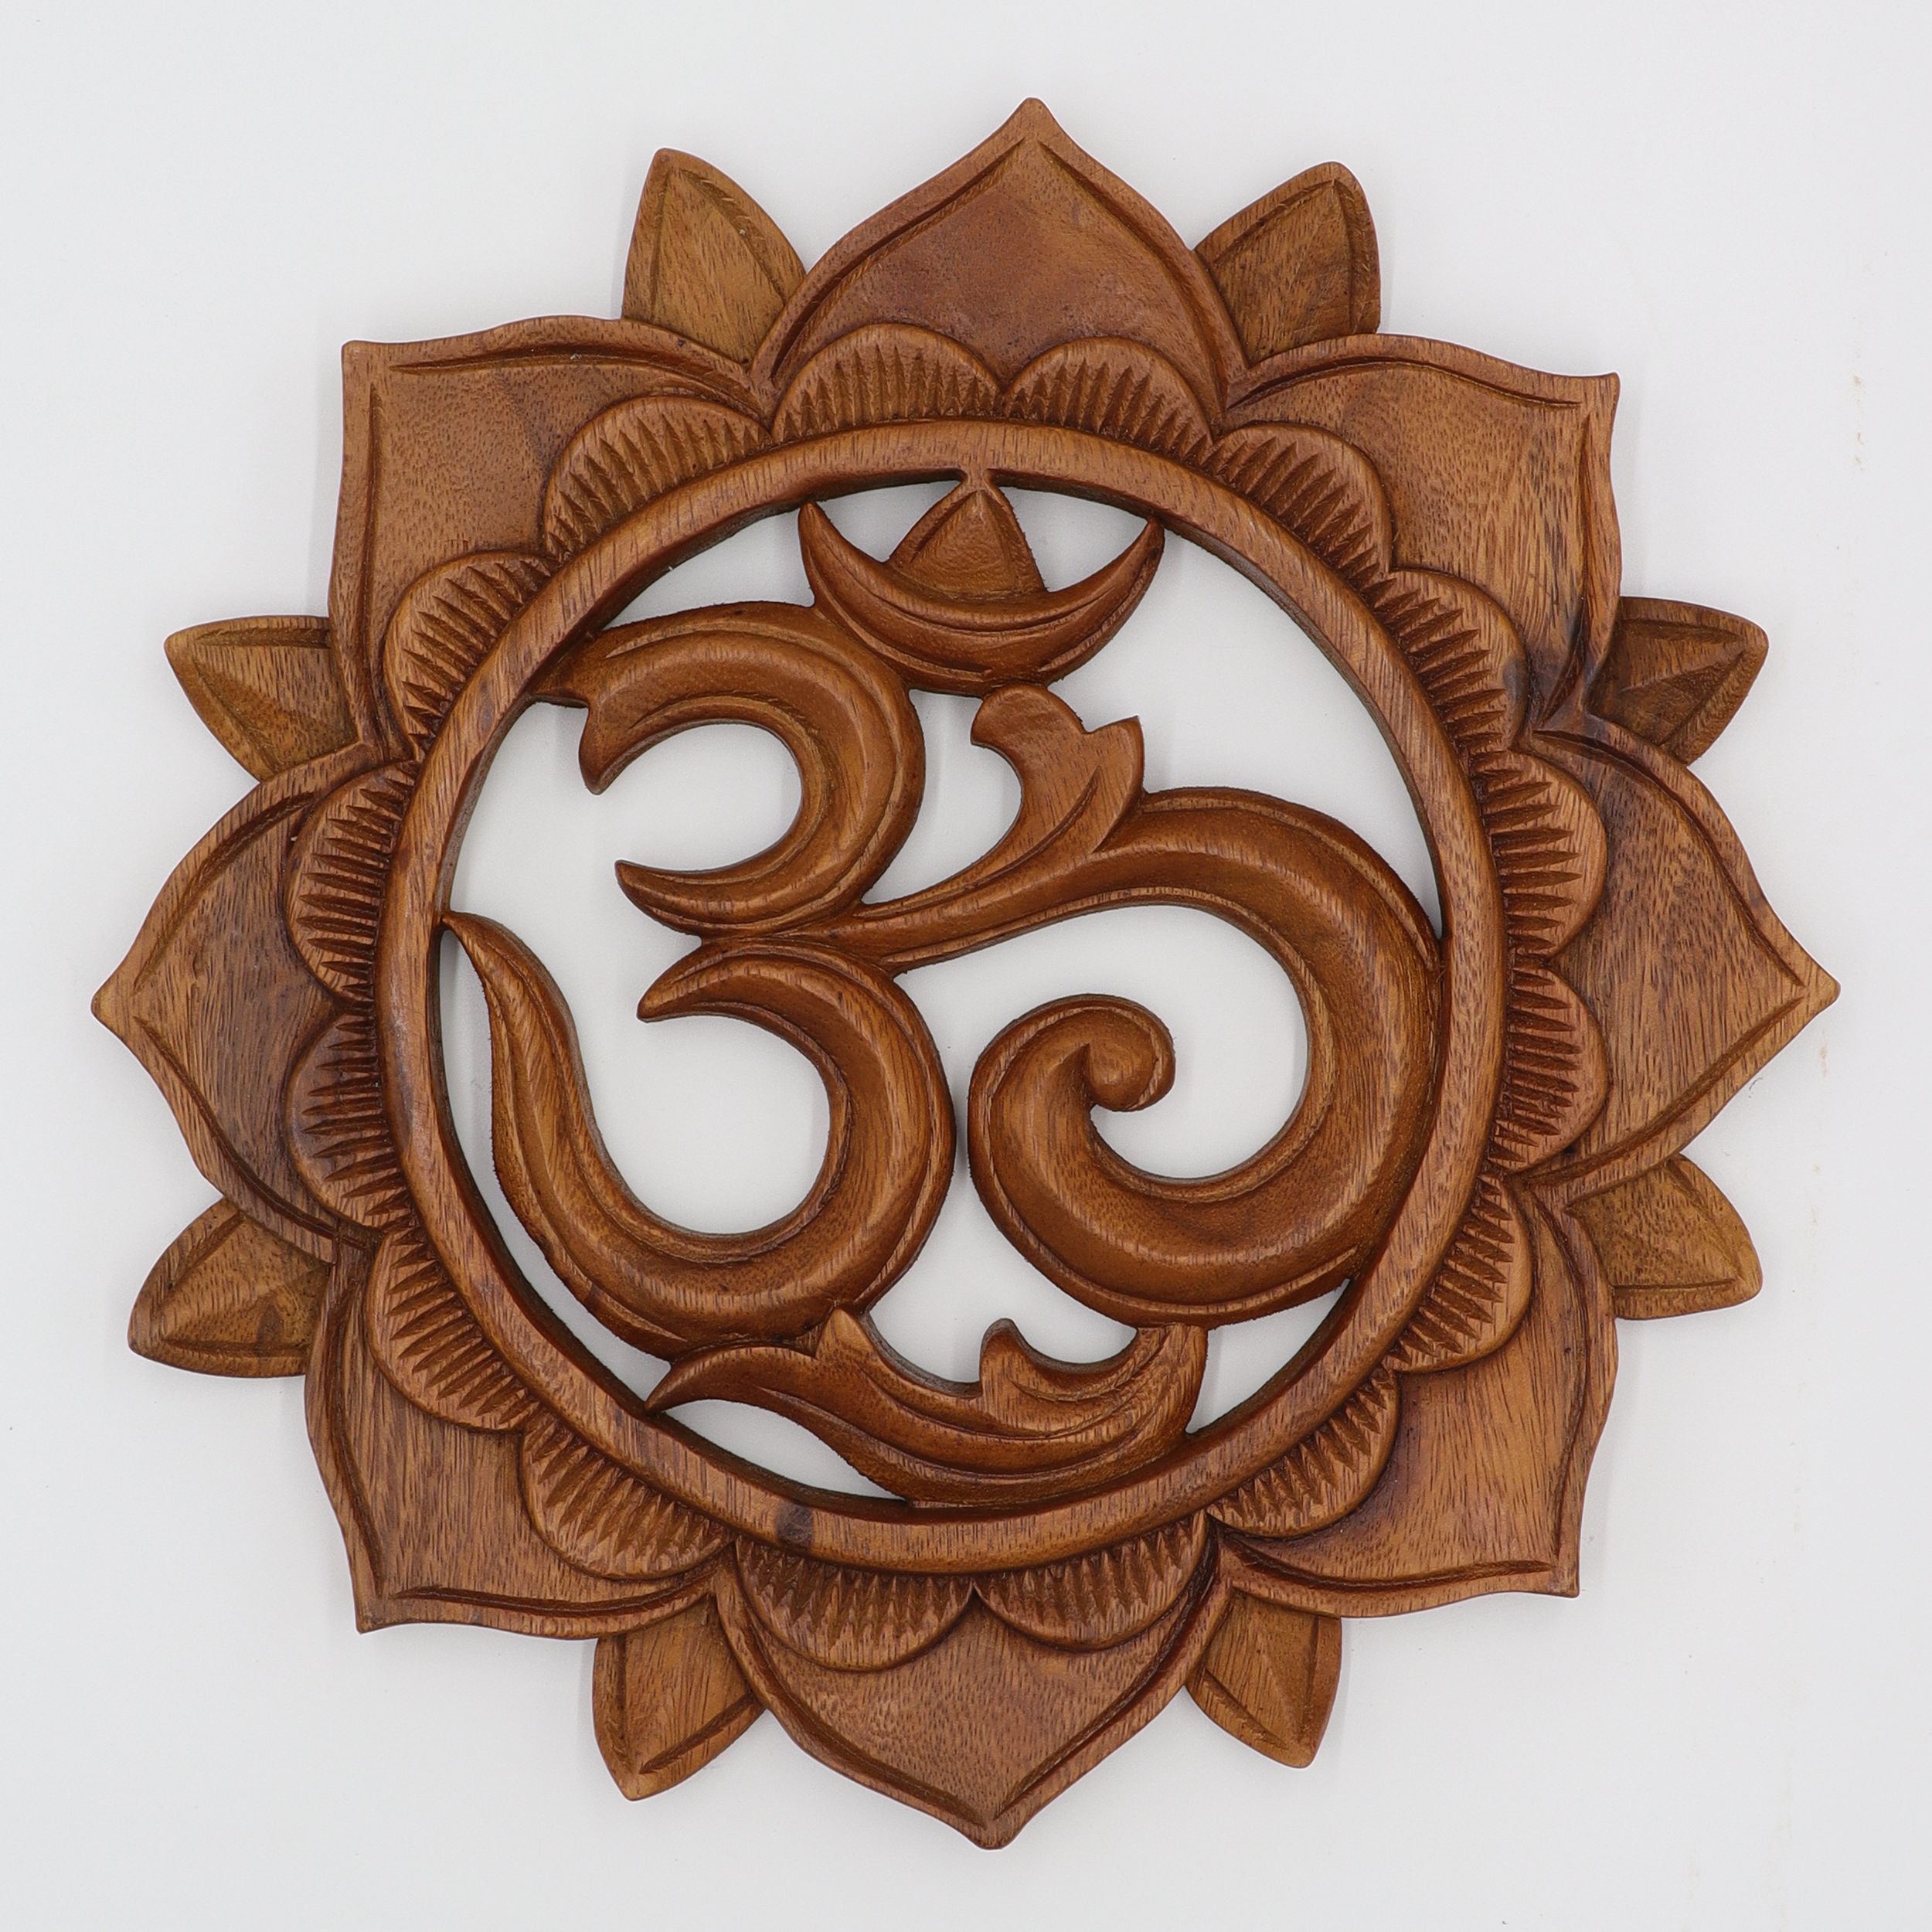 Wandbild aus Holz - Om mit Lotus - ca. 30 cm Ø - 100% Suar Holz - aufwendig von Hand geschnitztes Om - wundervolle Wanddekoration mit einzigartiger Musterung für Deine Wohlfühloase - echte Handarbeit aus Indonesien - V02